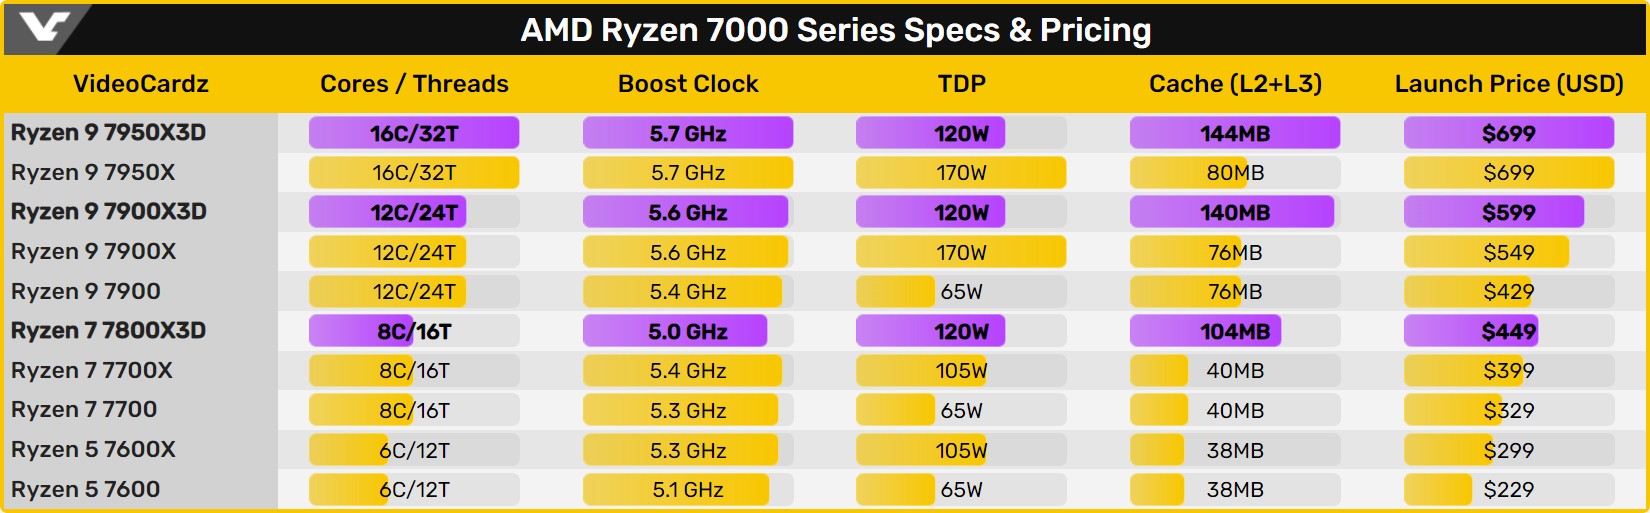 Опубликованы первые игровые тесты AMD Ryzen 7800X3D